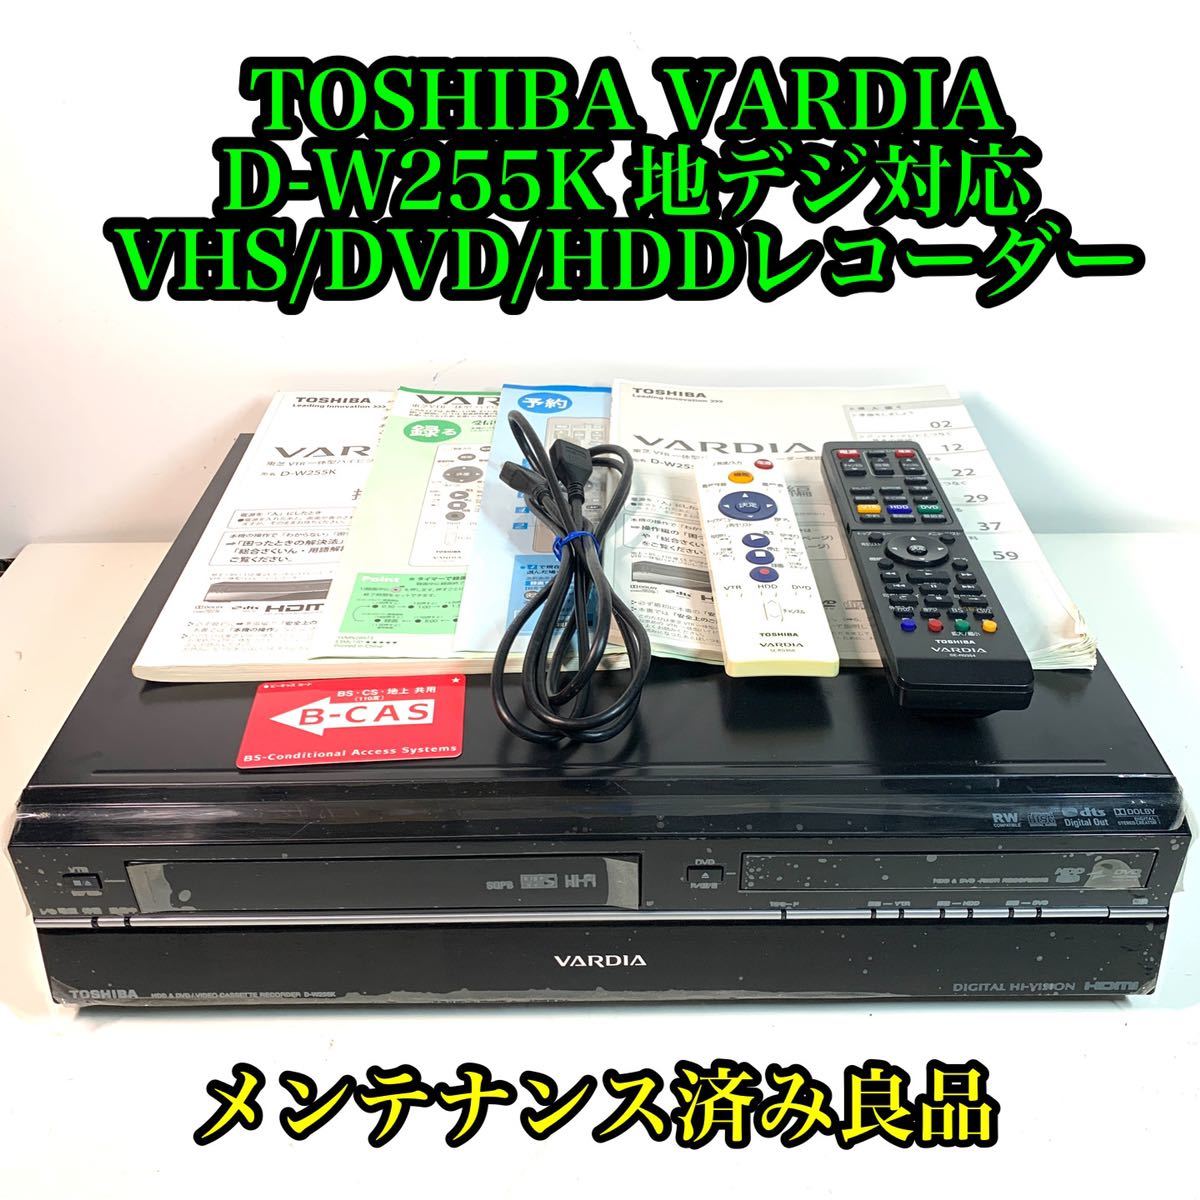 東芝 VARDIA D-W255K VHS/DVD/HDDレコーダー　メンテ済み_画像1